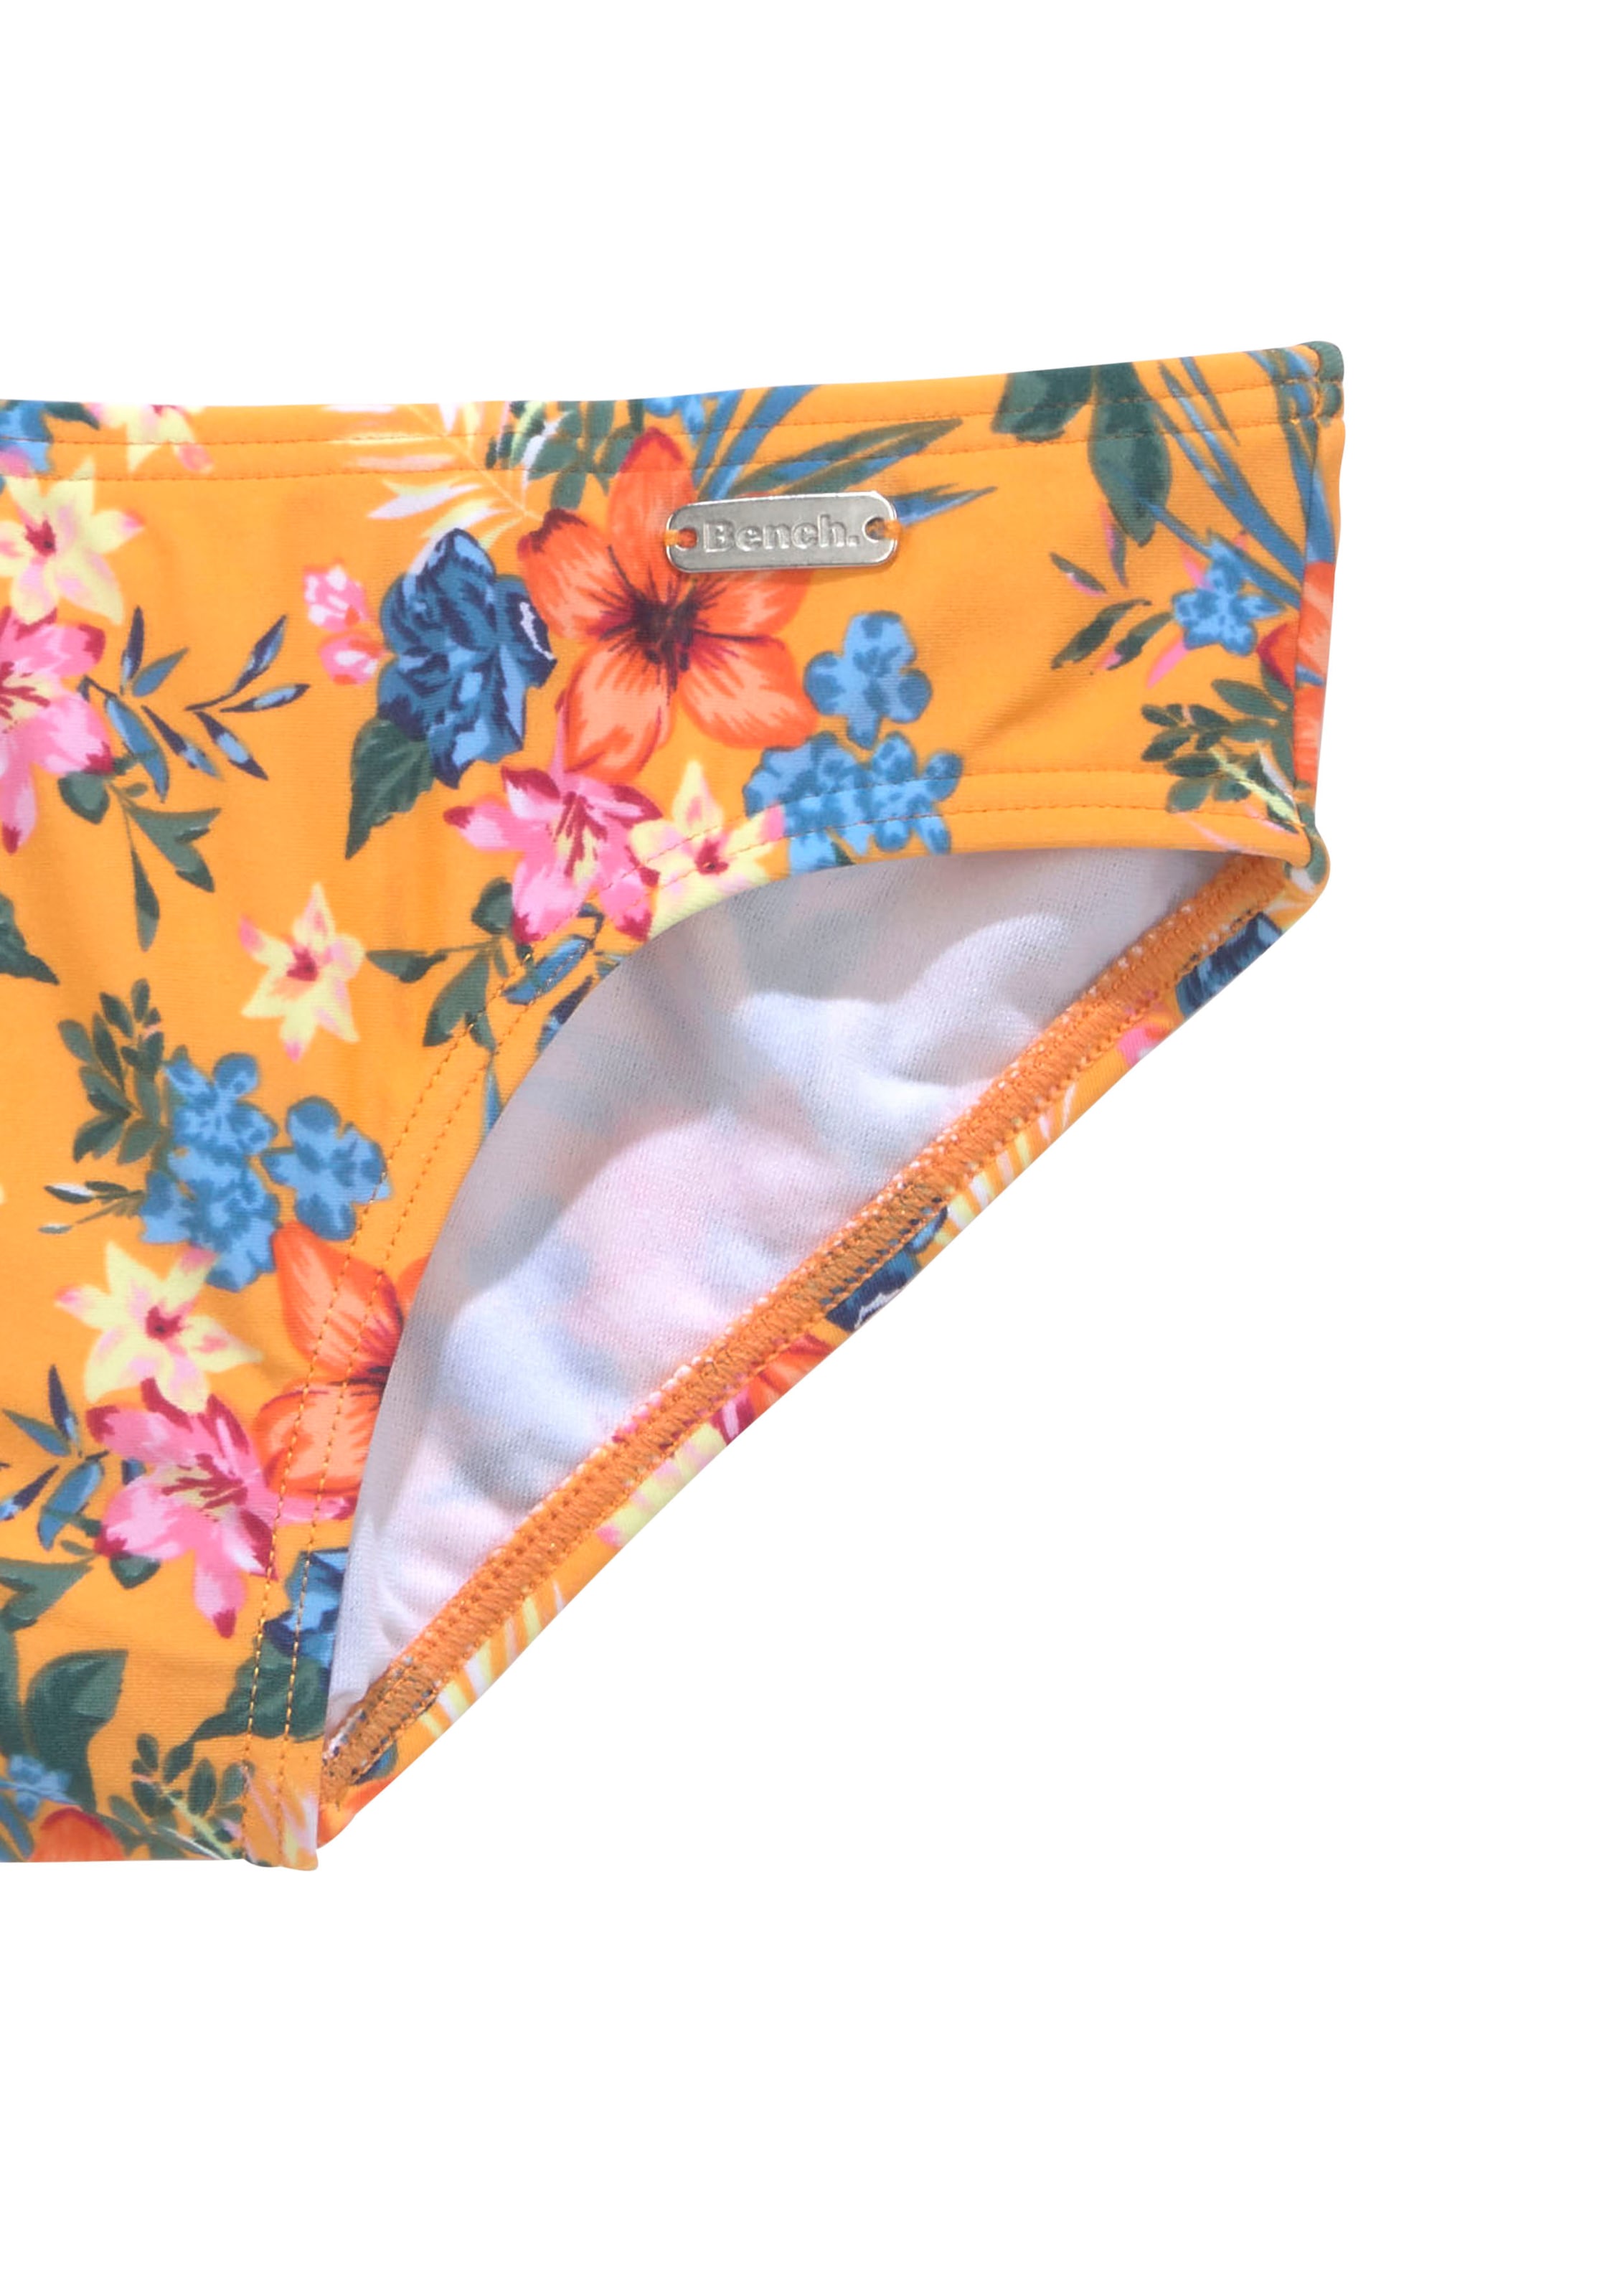 Trendige Bench. Bandeau-Bikini trendigem mit Druck ohne Kids«, bestellen Mindestbestellwert »Maui